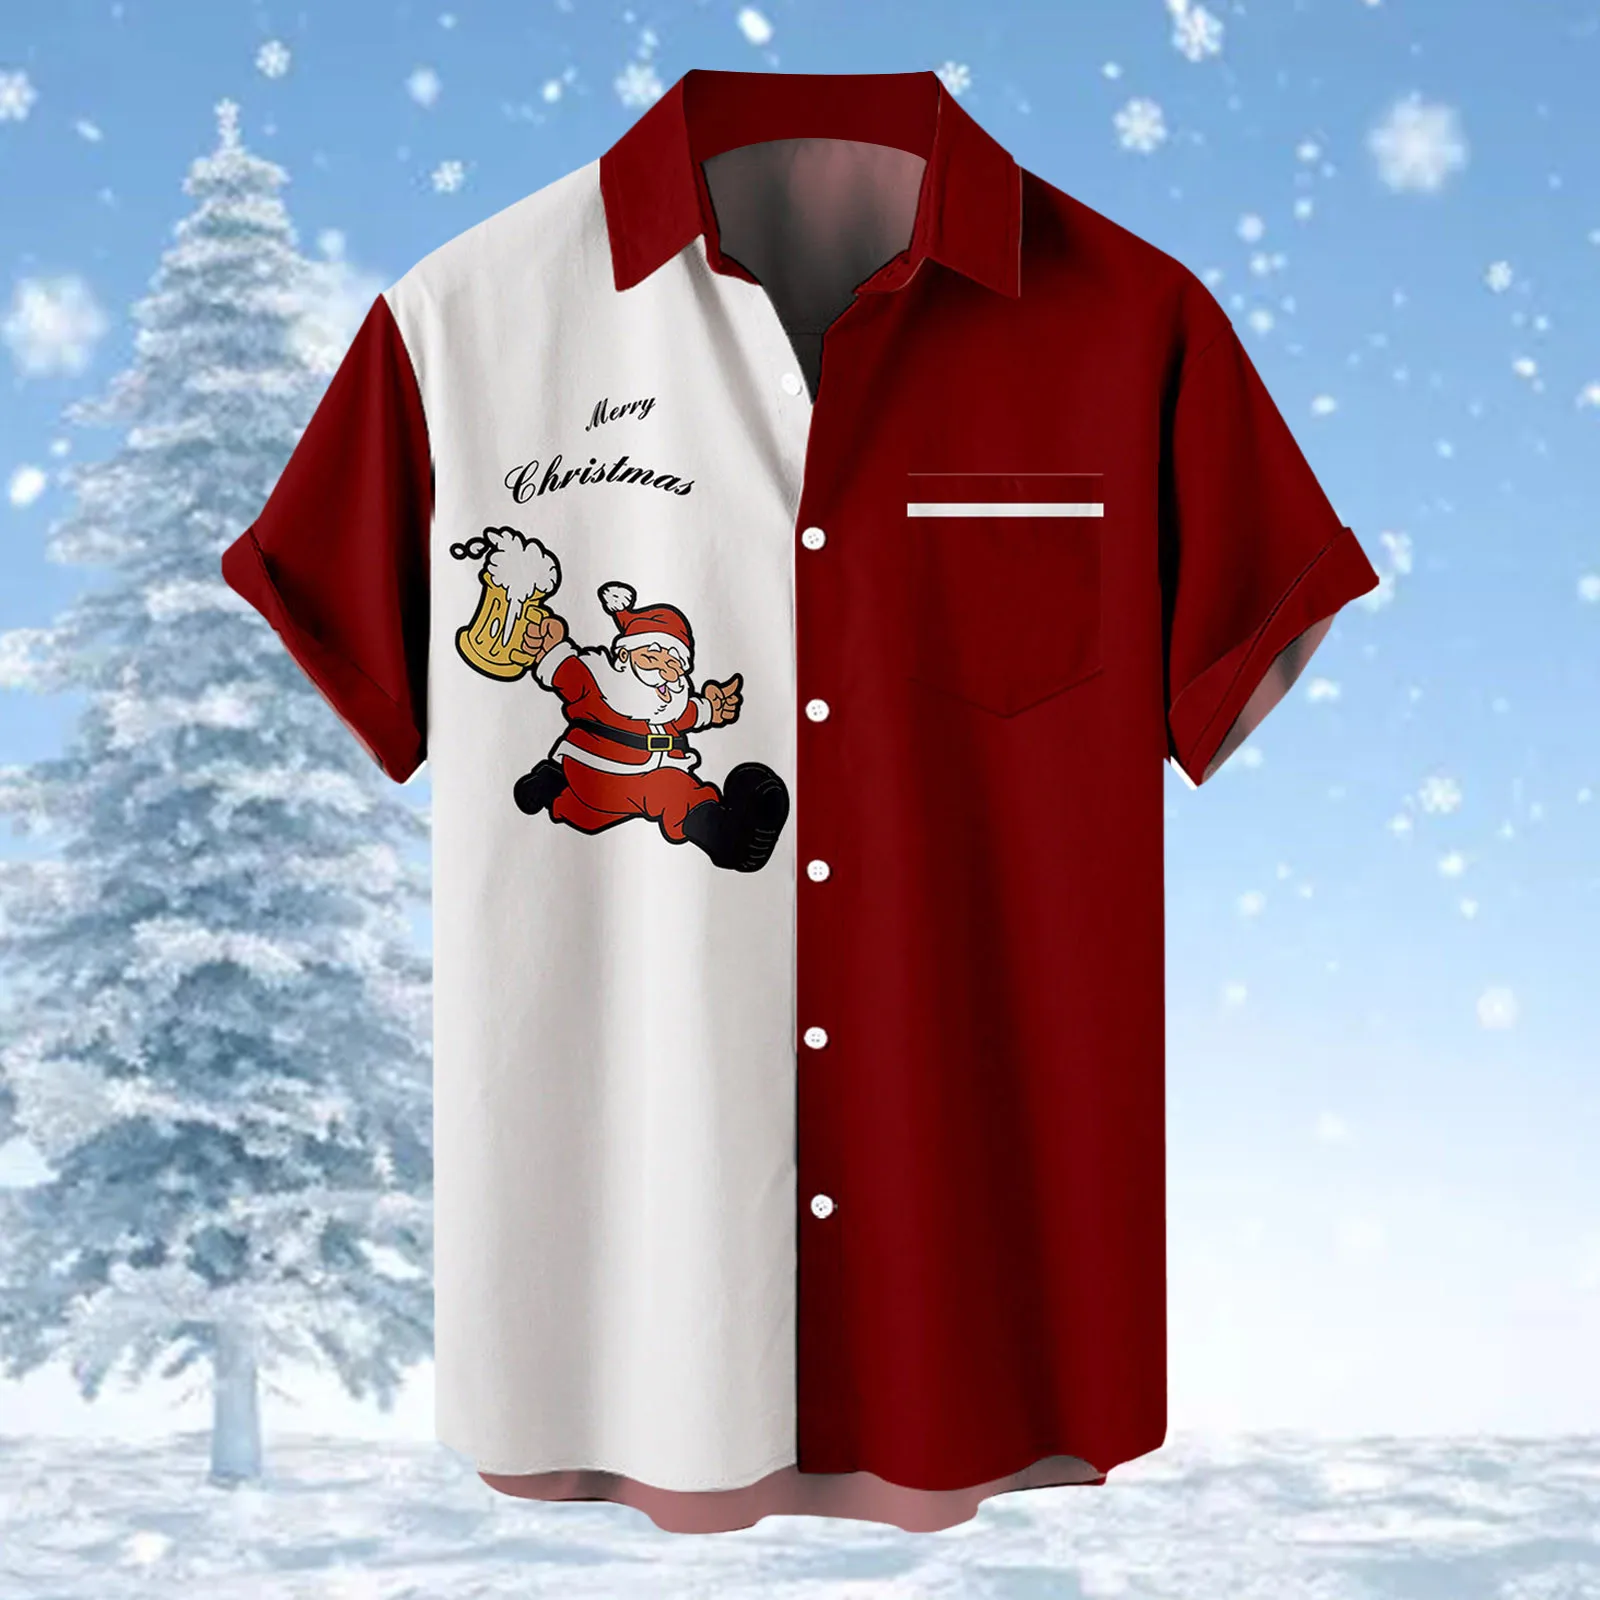 

Mens Christmas Santa Claus Shirt New Year Short Sleeve Party Blouses Santa Claus Print Camisas Blusas Ugly Funny T Shirt Male